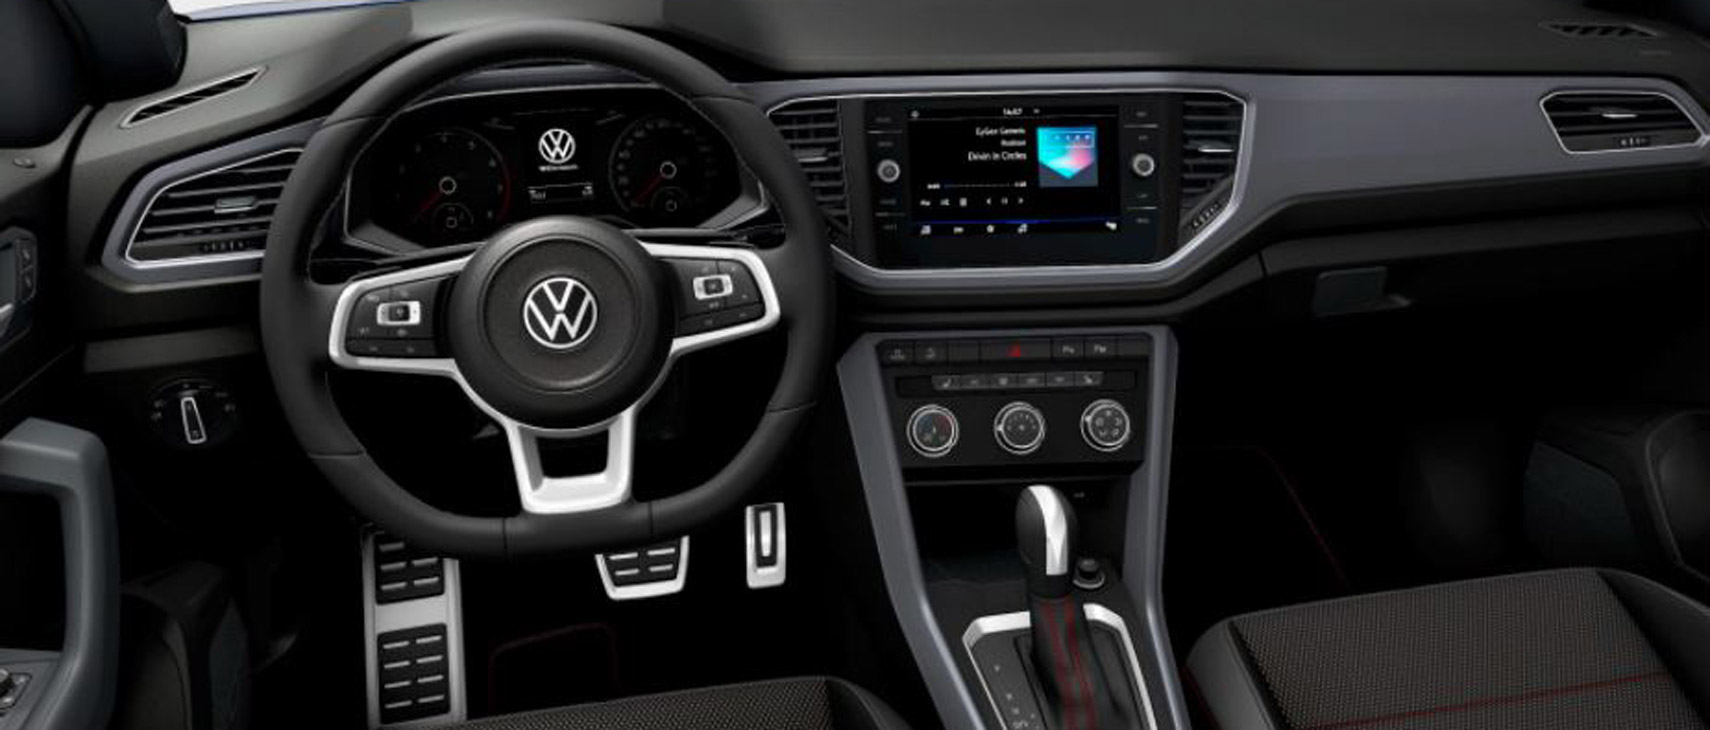 Unser T-Roc von innen. Vor allem die Edelstahl-Pedalerie unterstreicht dick den sportlichen Charakter unseres SUV. - Bild: VW-Konfigurator